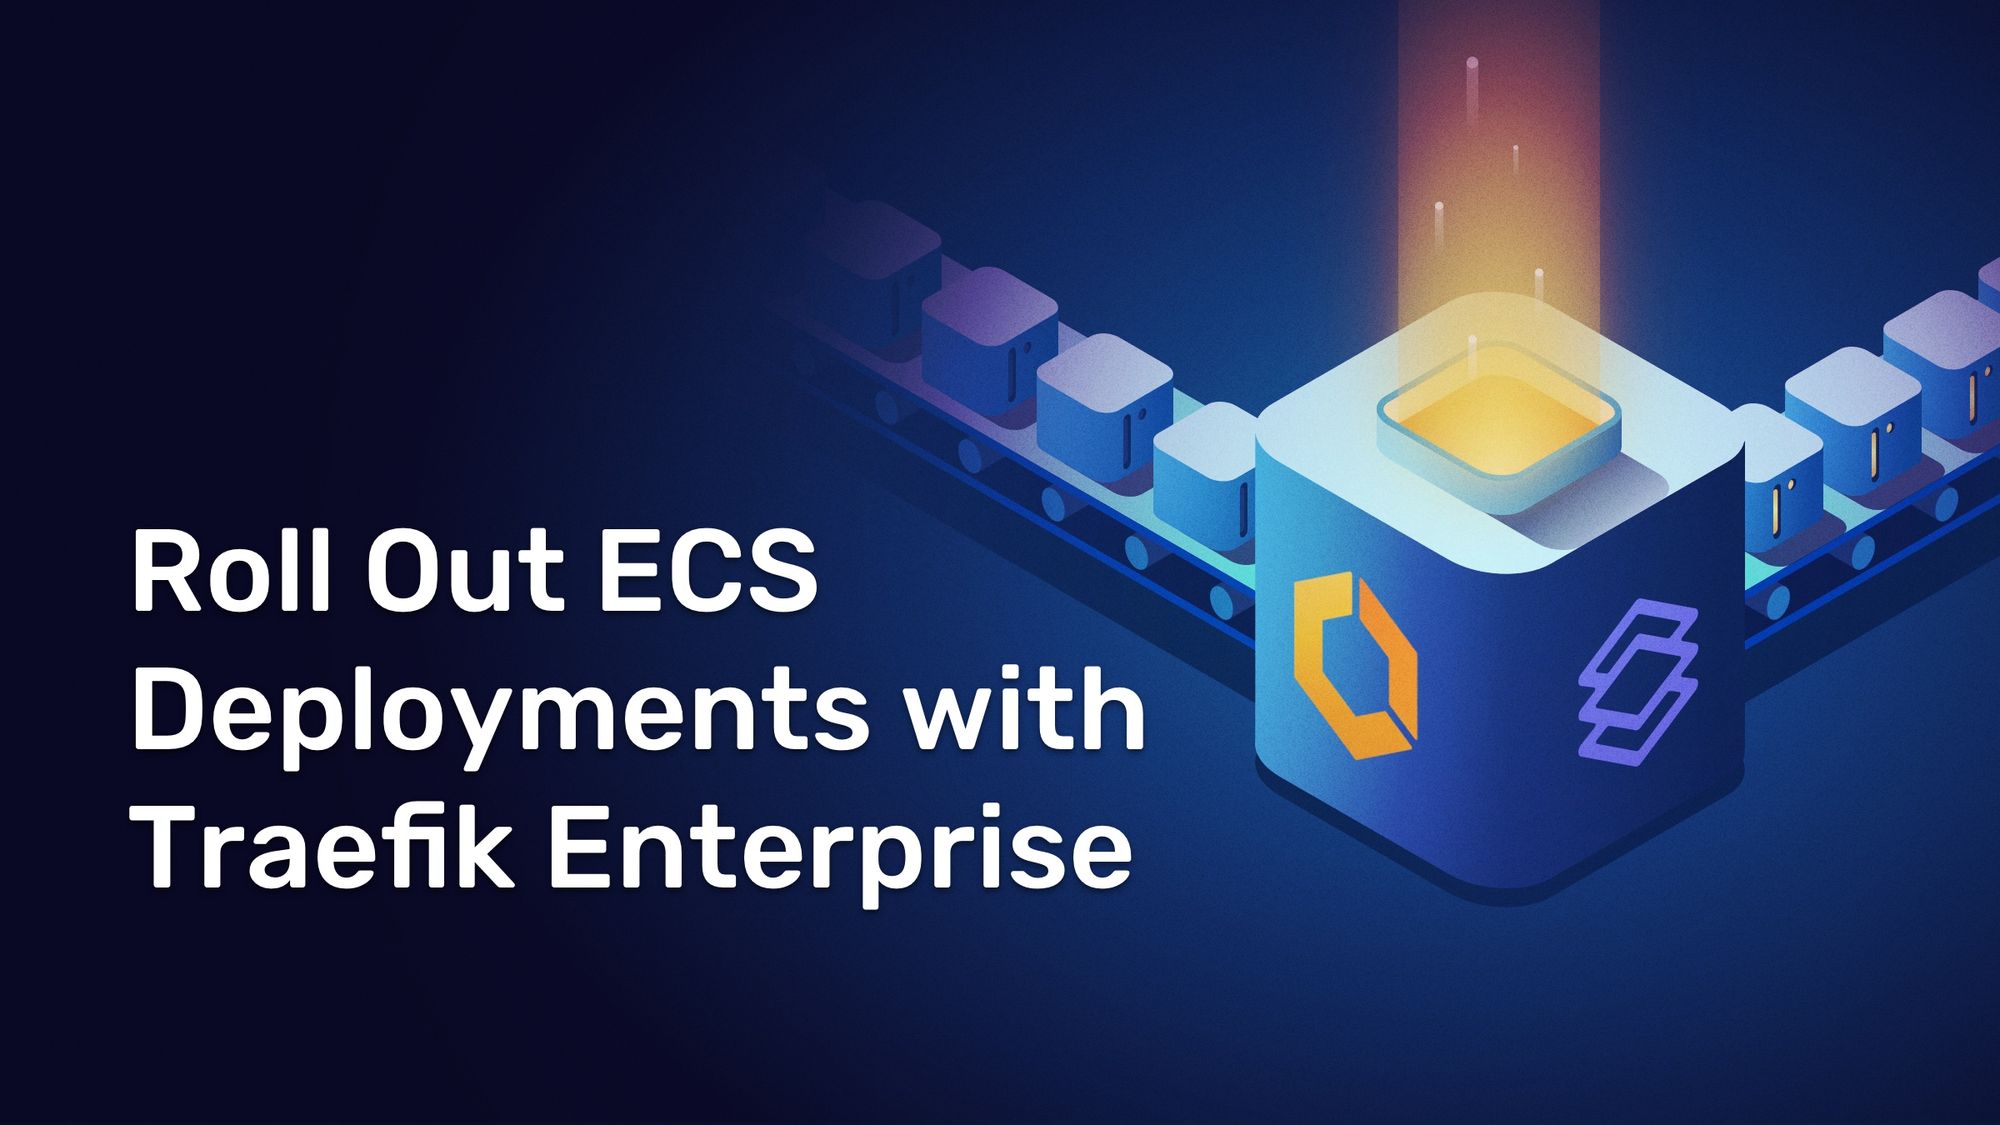 ecs deployments with traefik enterprise